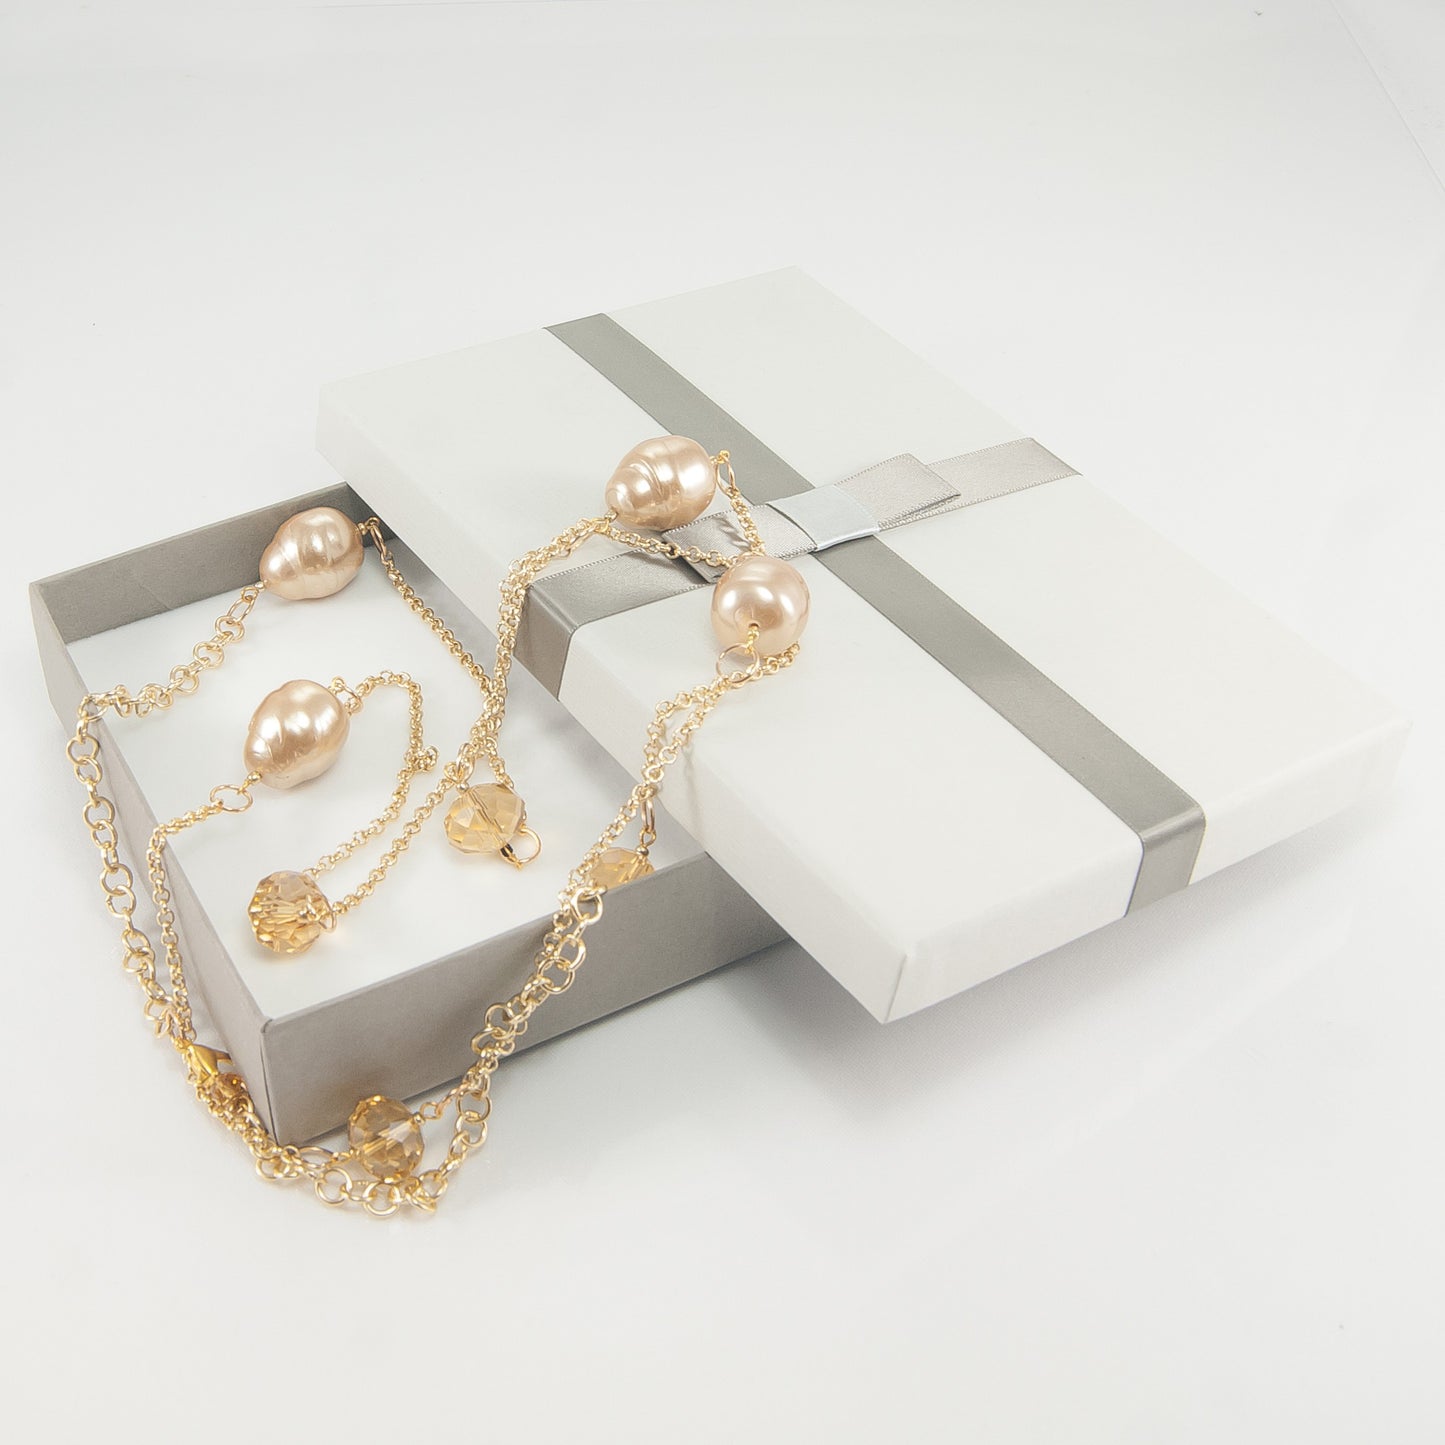 Collana ZELDA .029 maglie dorate, perle barocche bronzo.